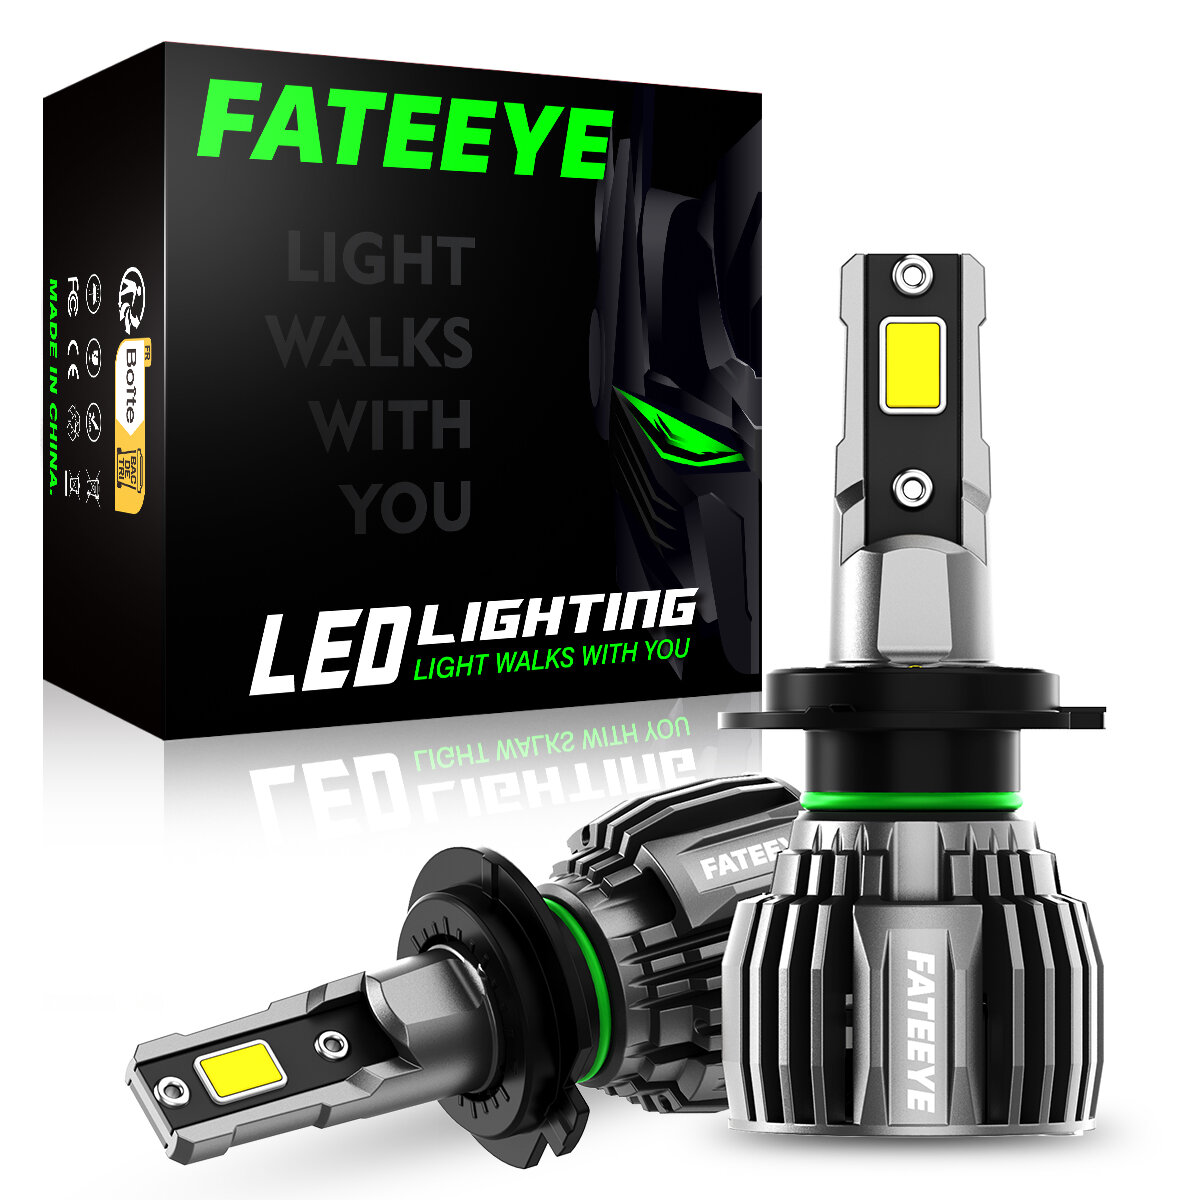 FATEEYE A700-F6 2 STUKS 60W LED Koplamp Lampen 13000LM LED Voor Autolamp 6500K IP68 Waterdicht voor Auto Aanpassing Top Merken Winkel